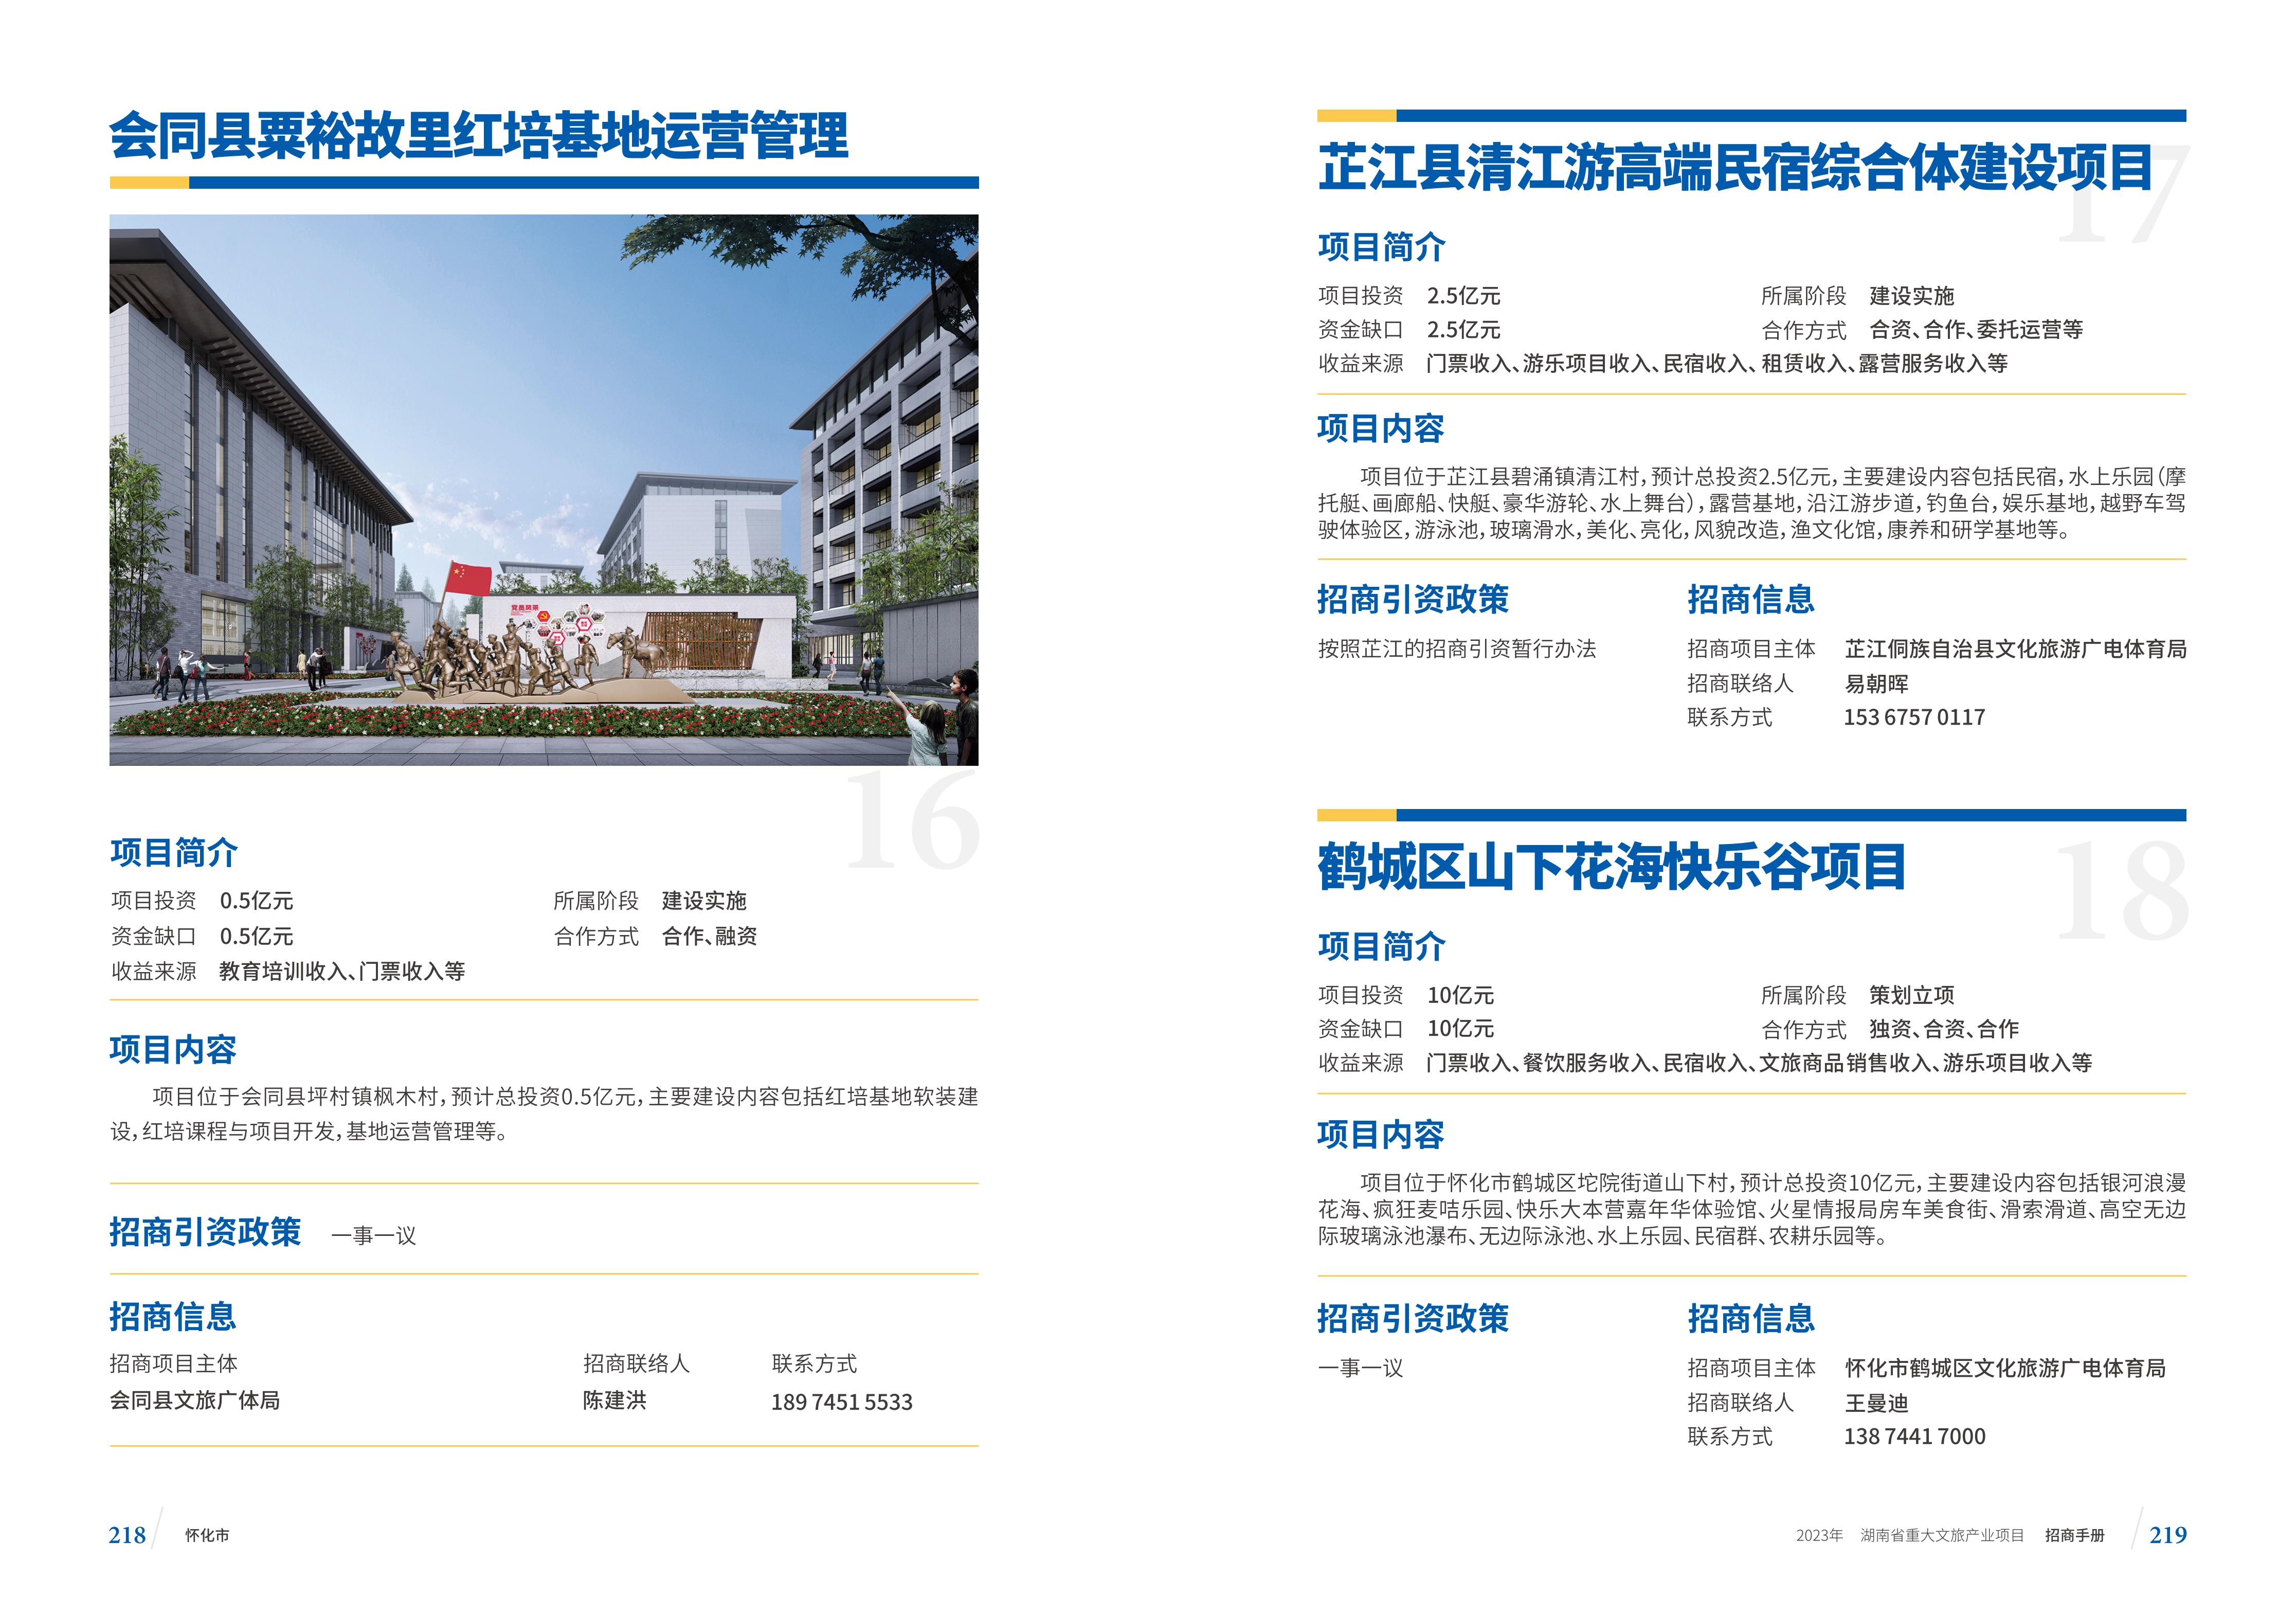 湖南省重大文旅产业项目招手册线上链接版_117.jpg